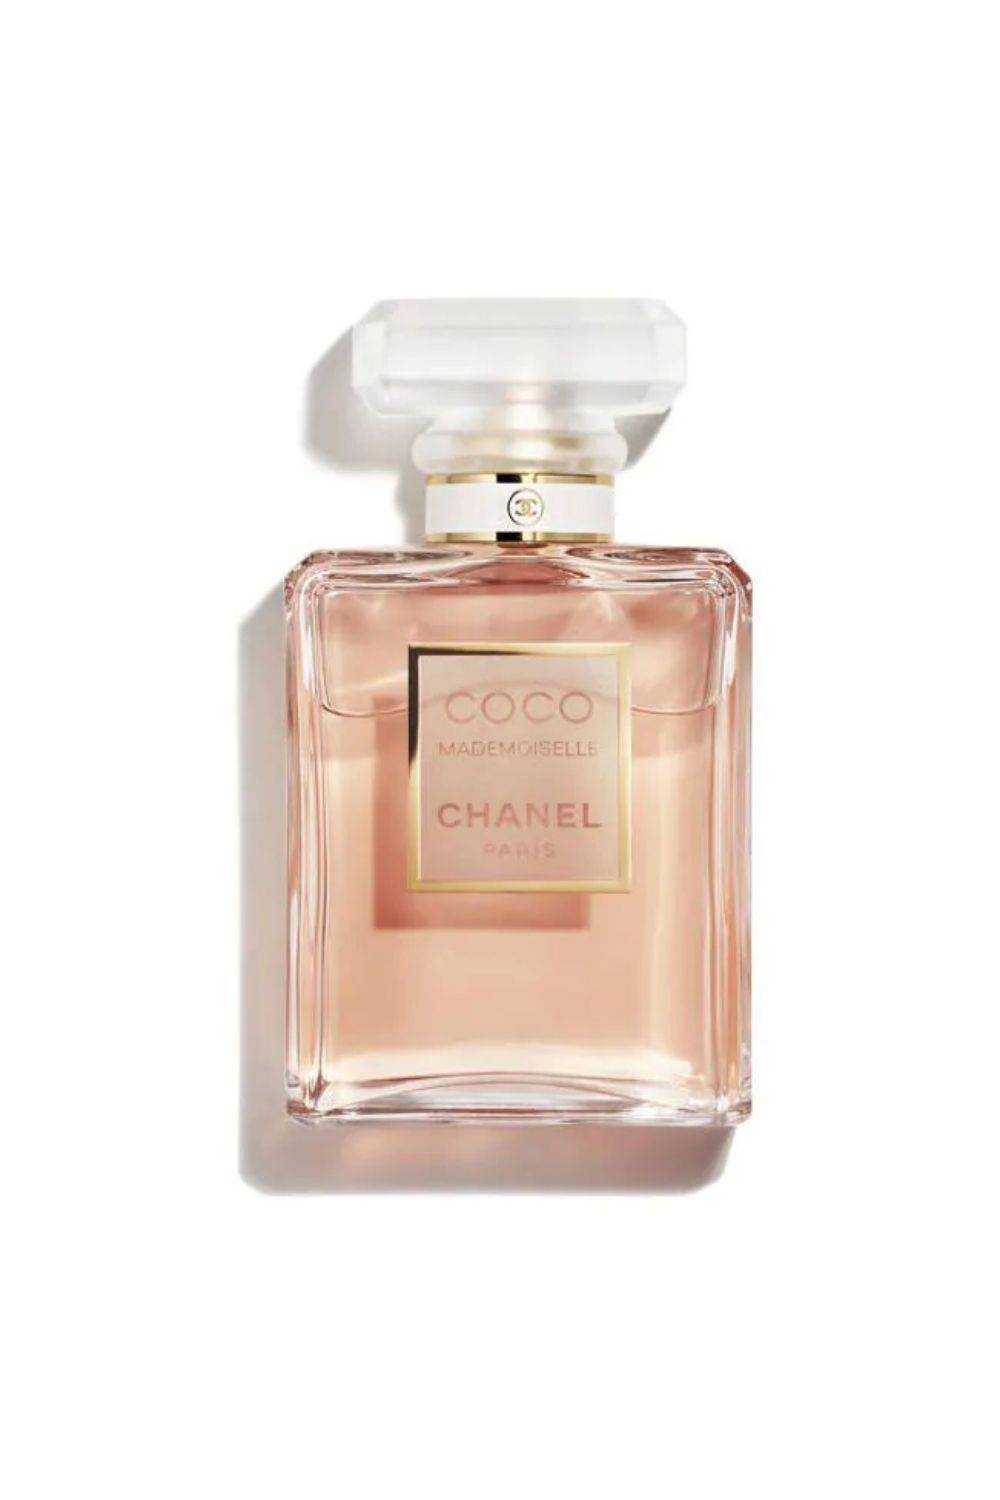 Los 50 perfumes que mejor huelen (ordenados por de fragancia)